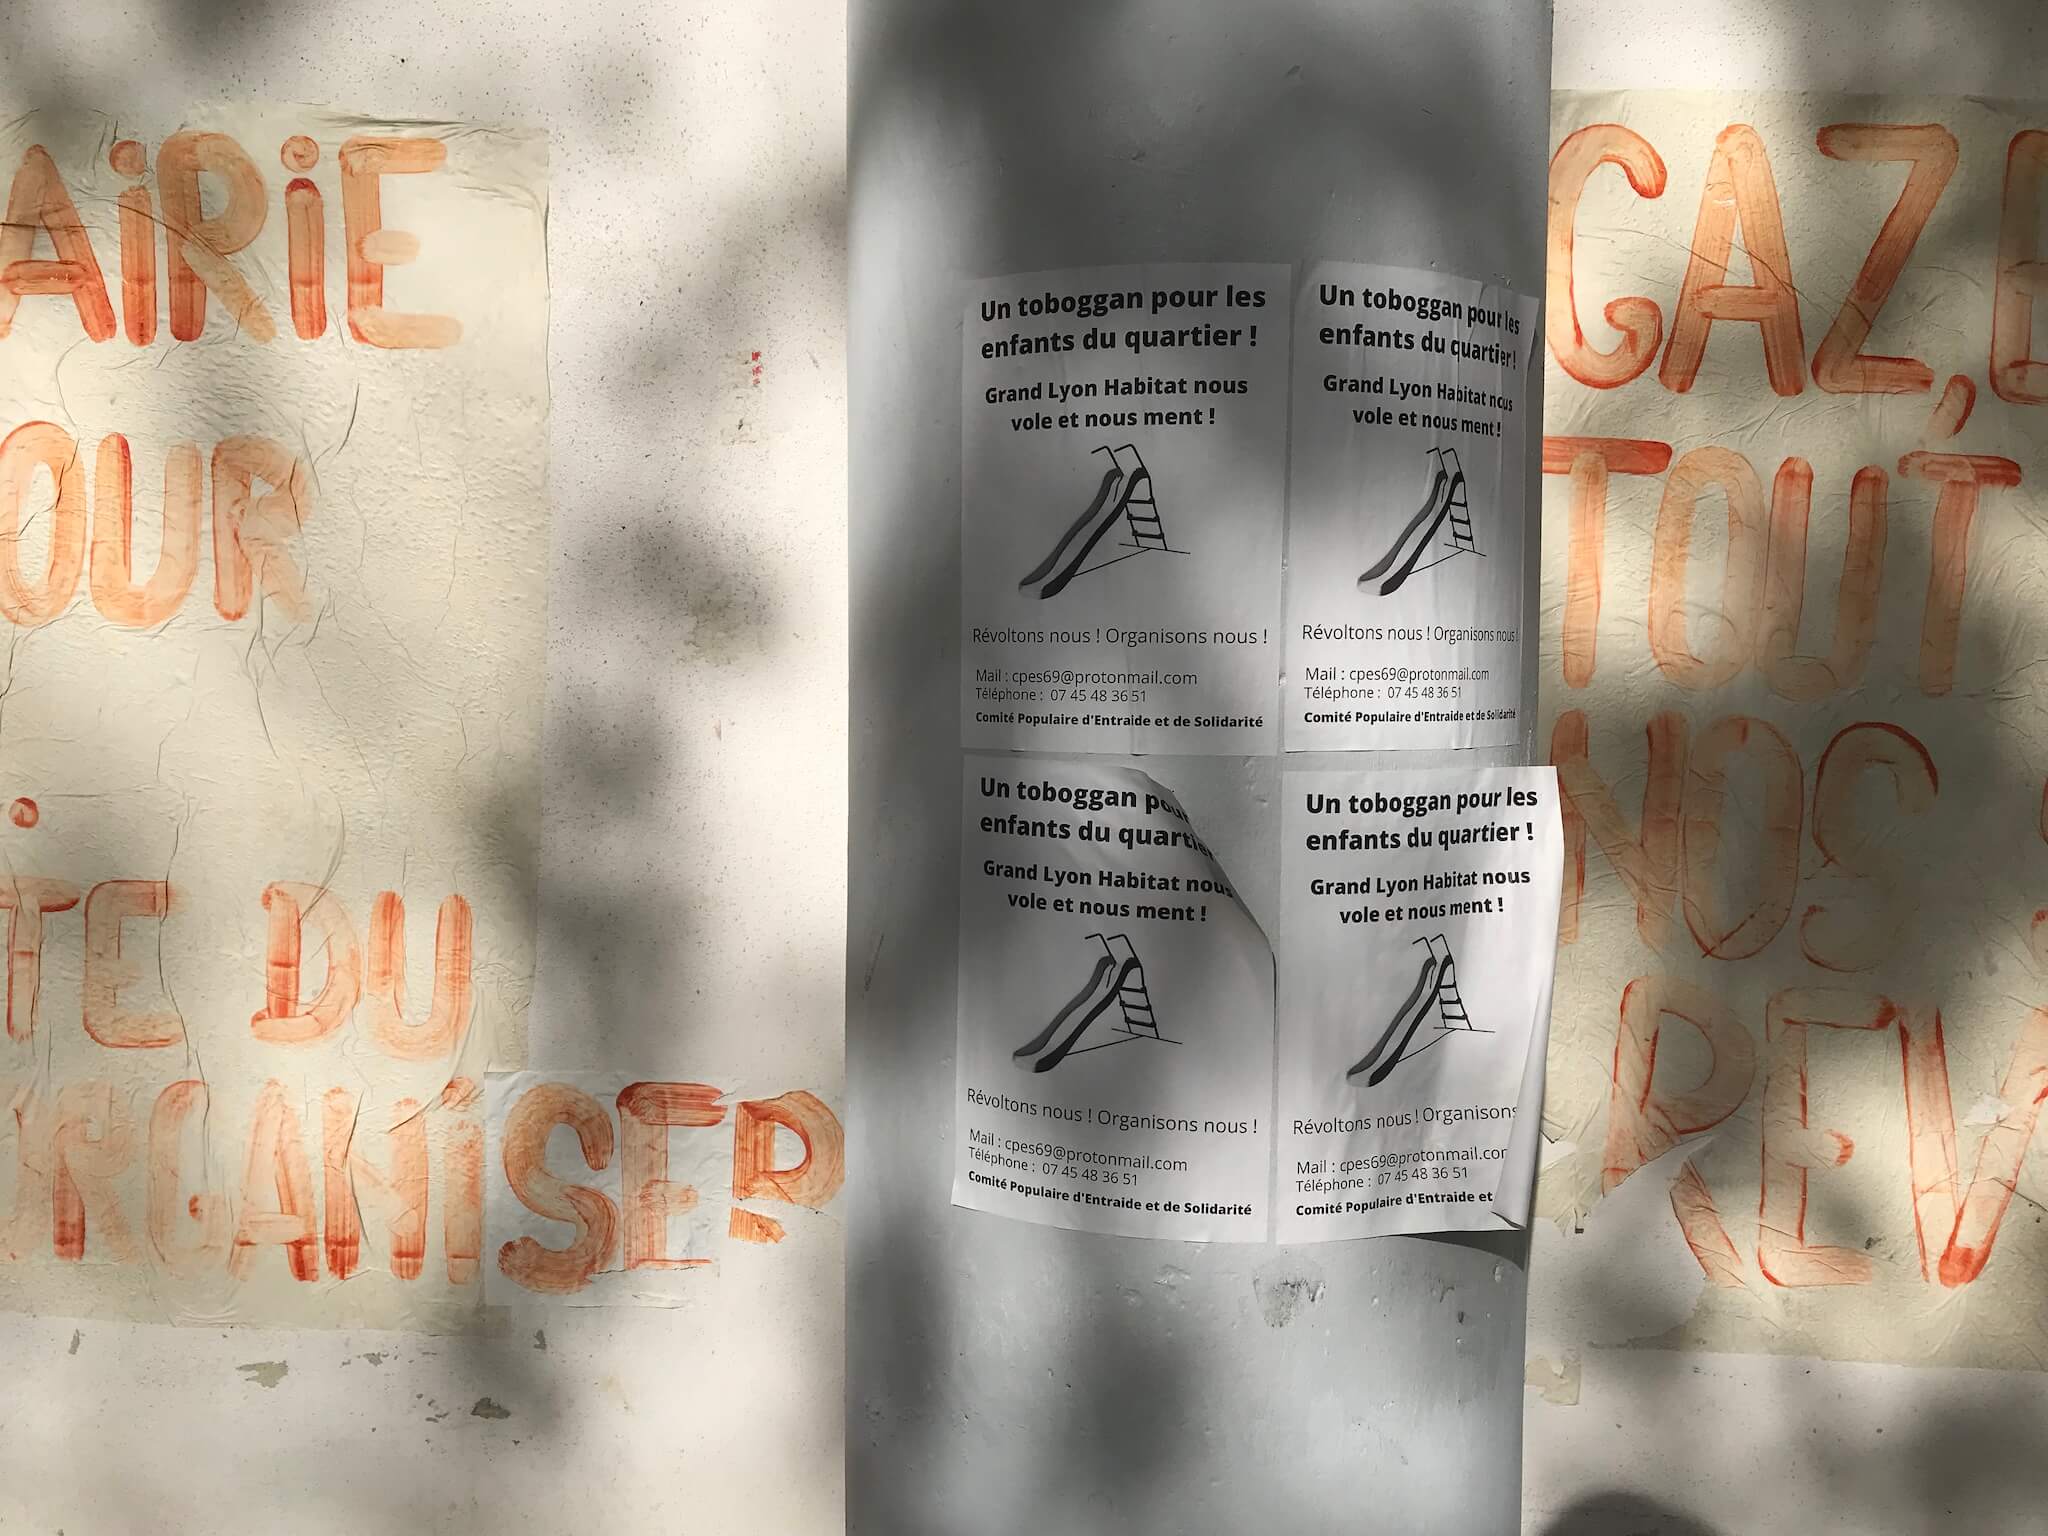 Affiches collées dans le quartier pour annoncer la mise en place du toboggan. ©OM/Rue89Lyon